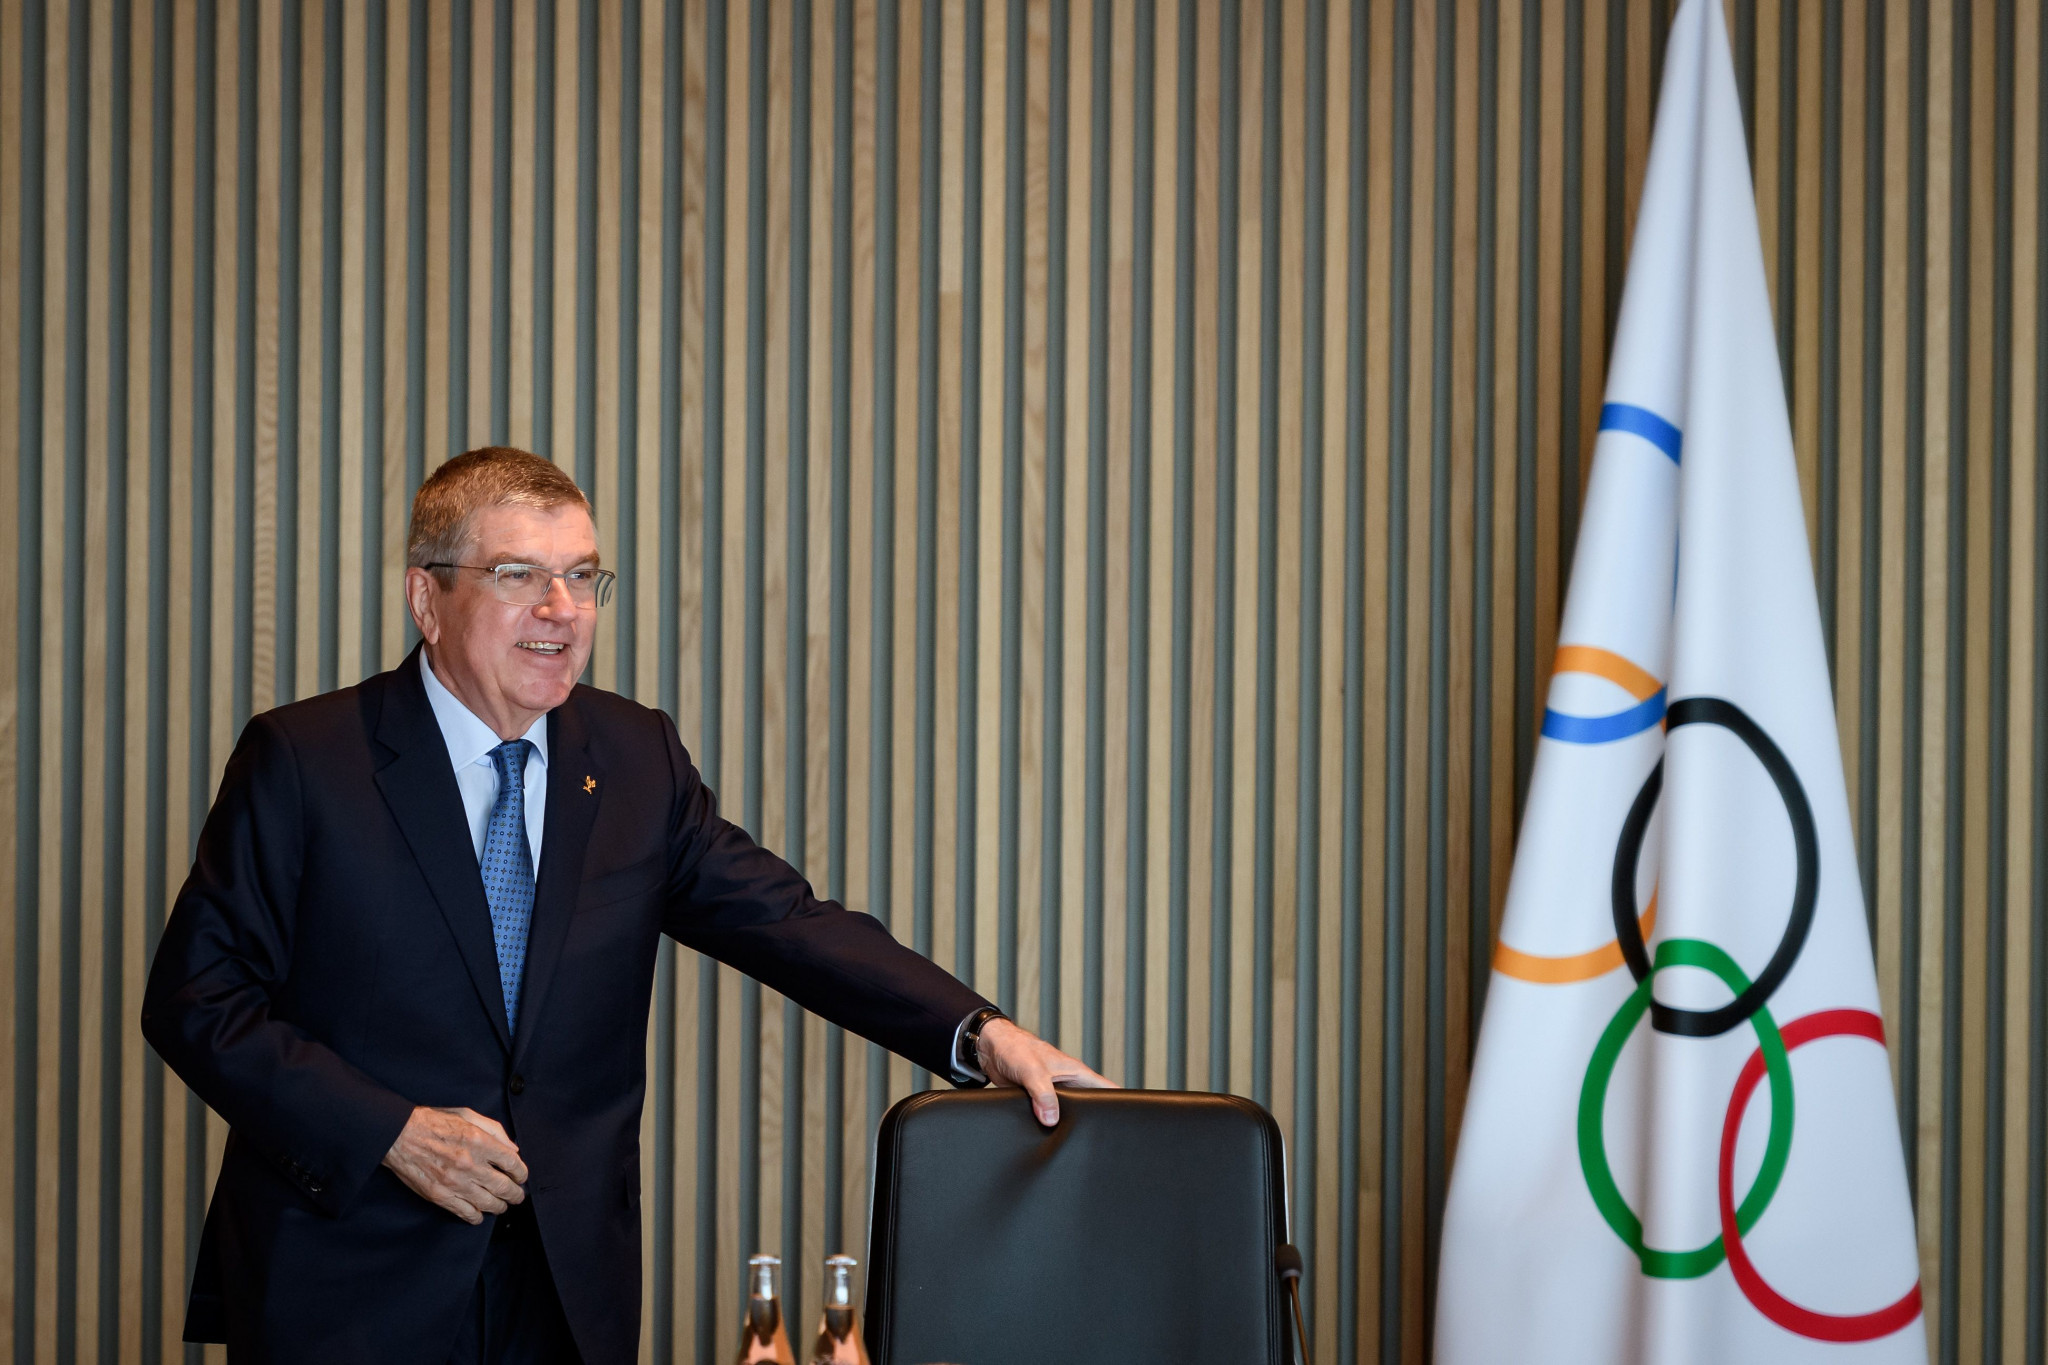 IOC President Thomas Bach said the organisation saw 